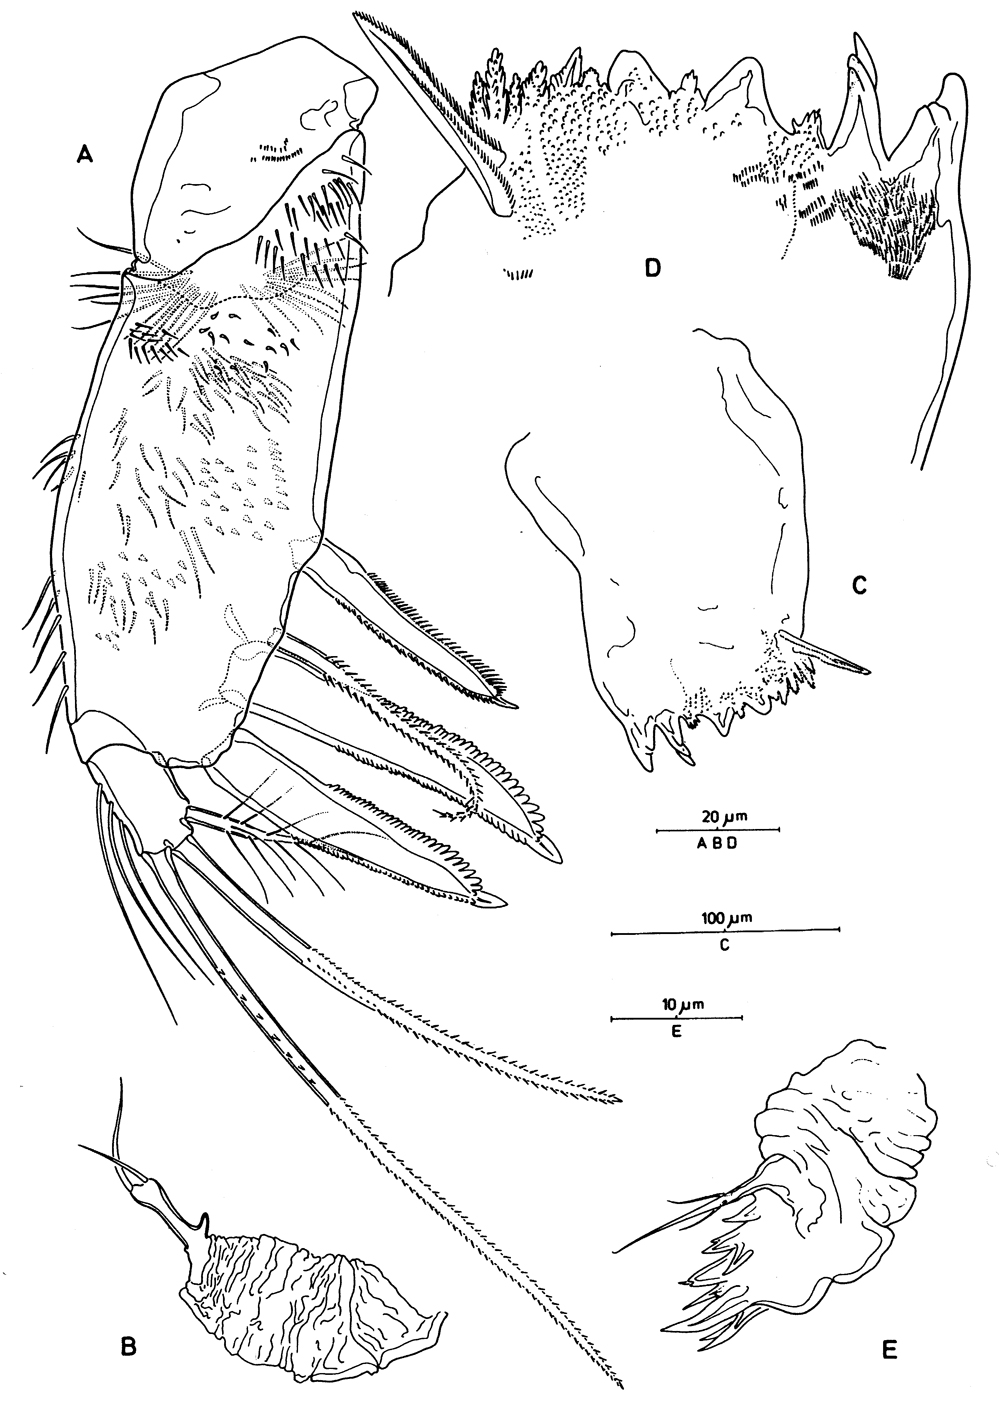 Species Aegisthus mucronatus - Plate 8 of morphological figures